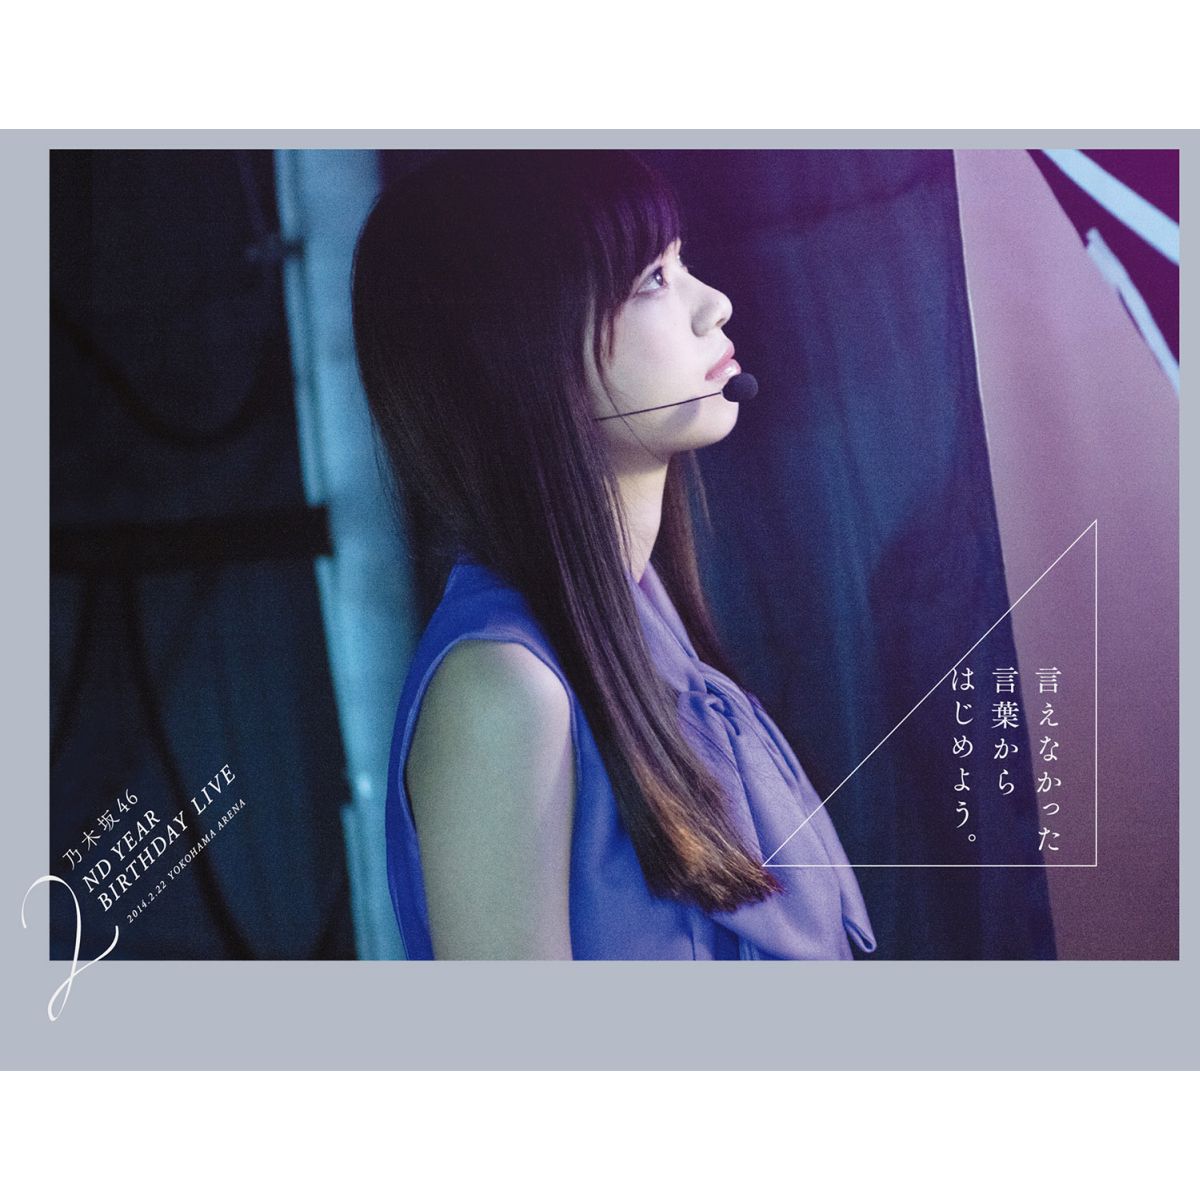 乃木坂46 2nd YEAR BIRTHDAY LIVE 完全生産限定盤DVD-